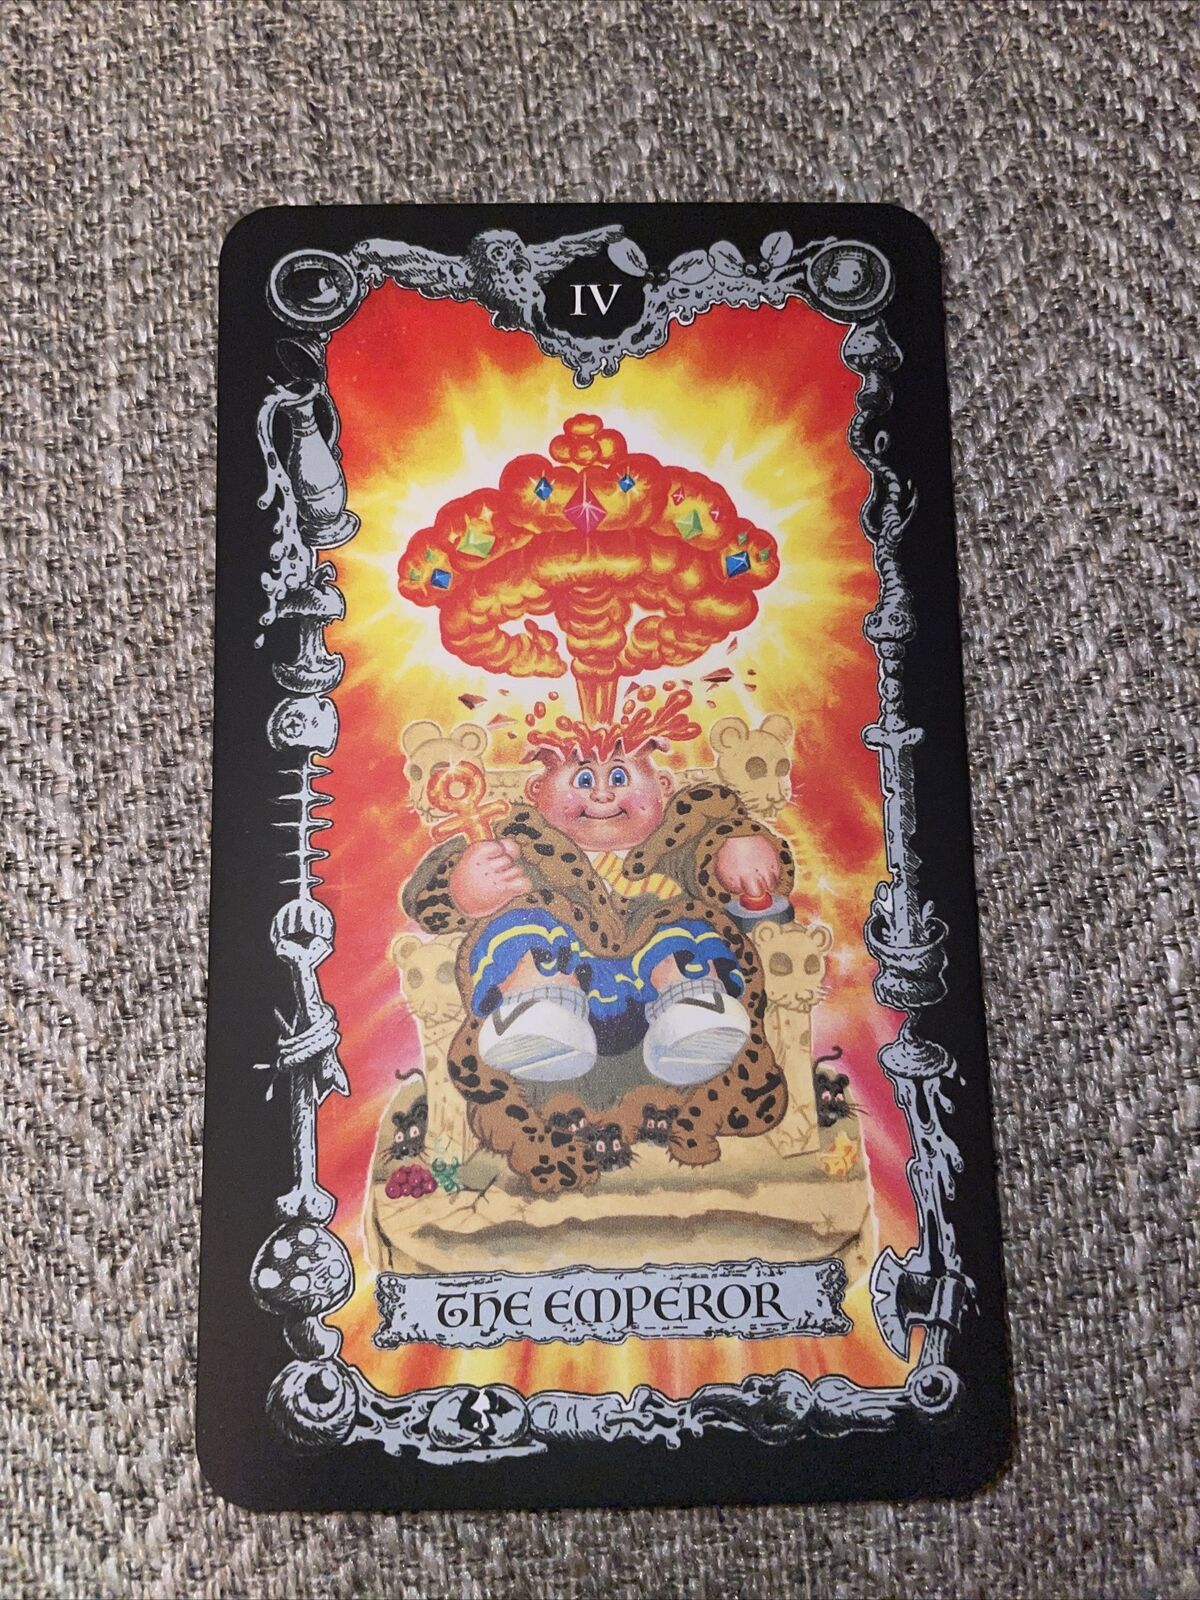 Garbage Pail Kids 2022 Tarot Card The Emperor IV “Adam Bomb” Mint